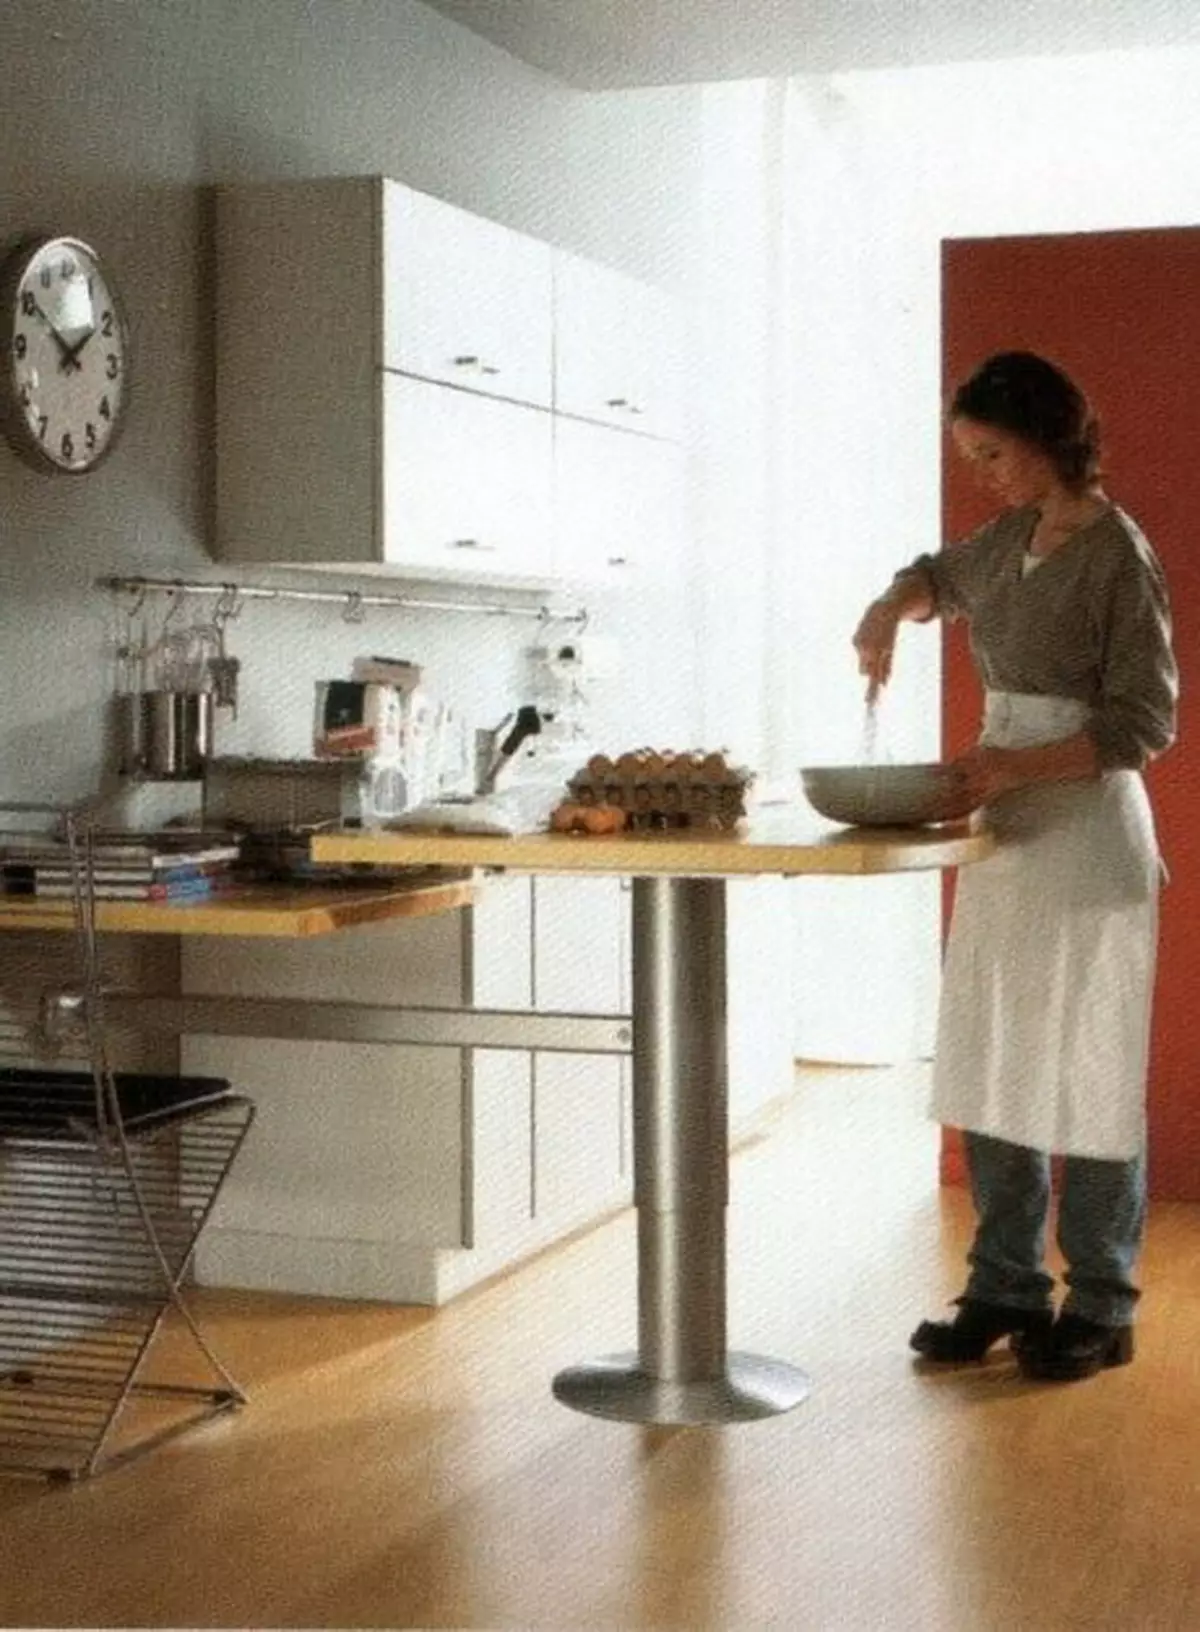 Keukenarbeiders Tafels (49 foto's): Mobiele snijtafels voor keukens van headligers, productie-professionele tafels met planken en andere opties 24846_32